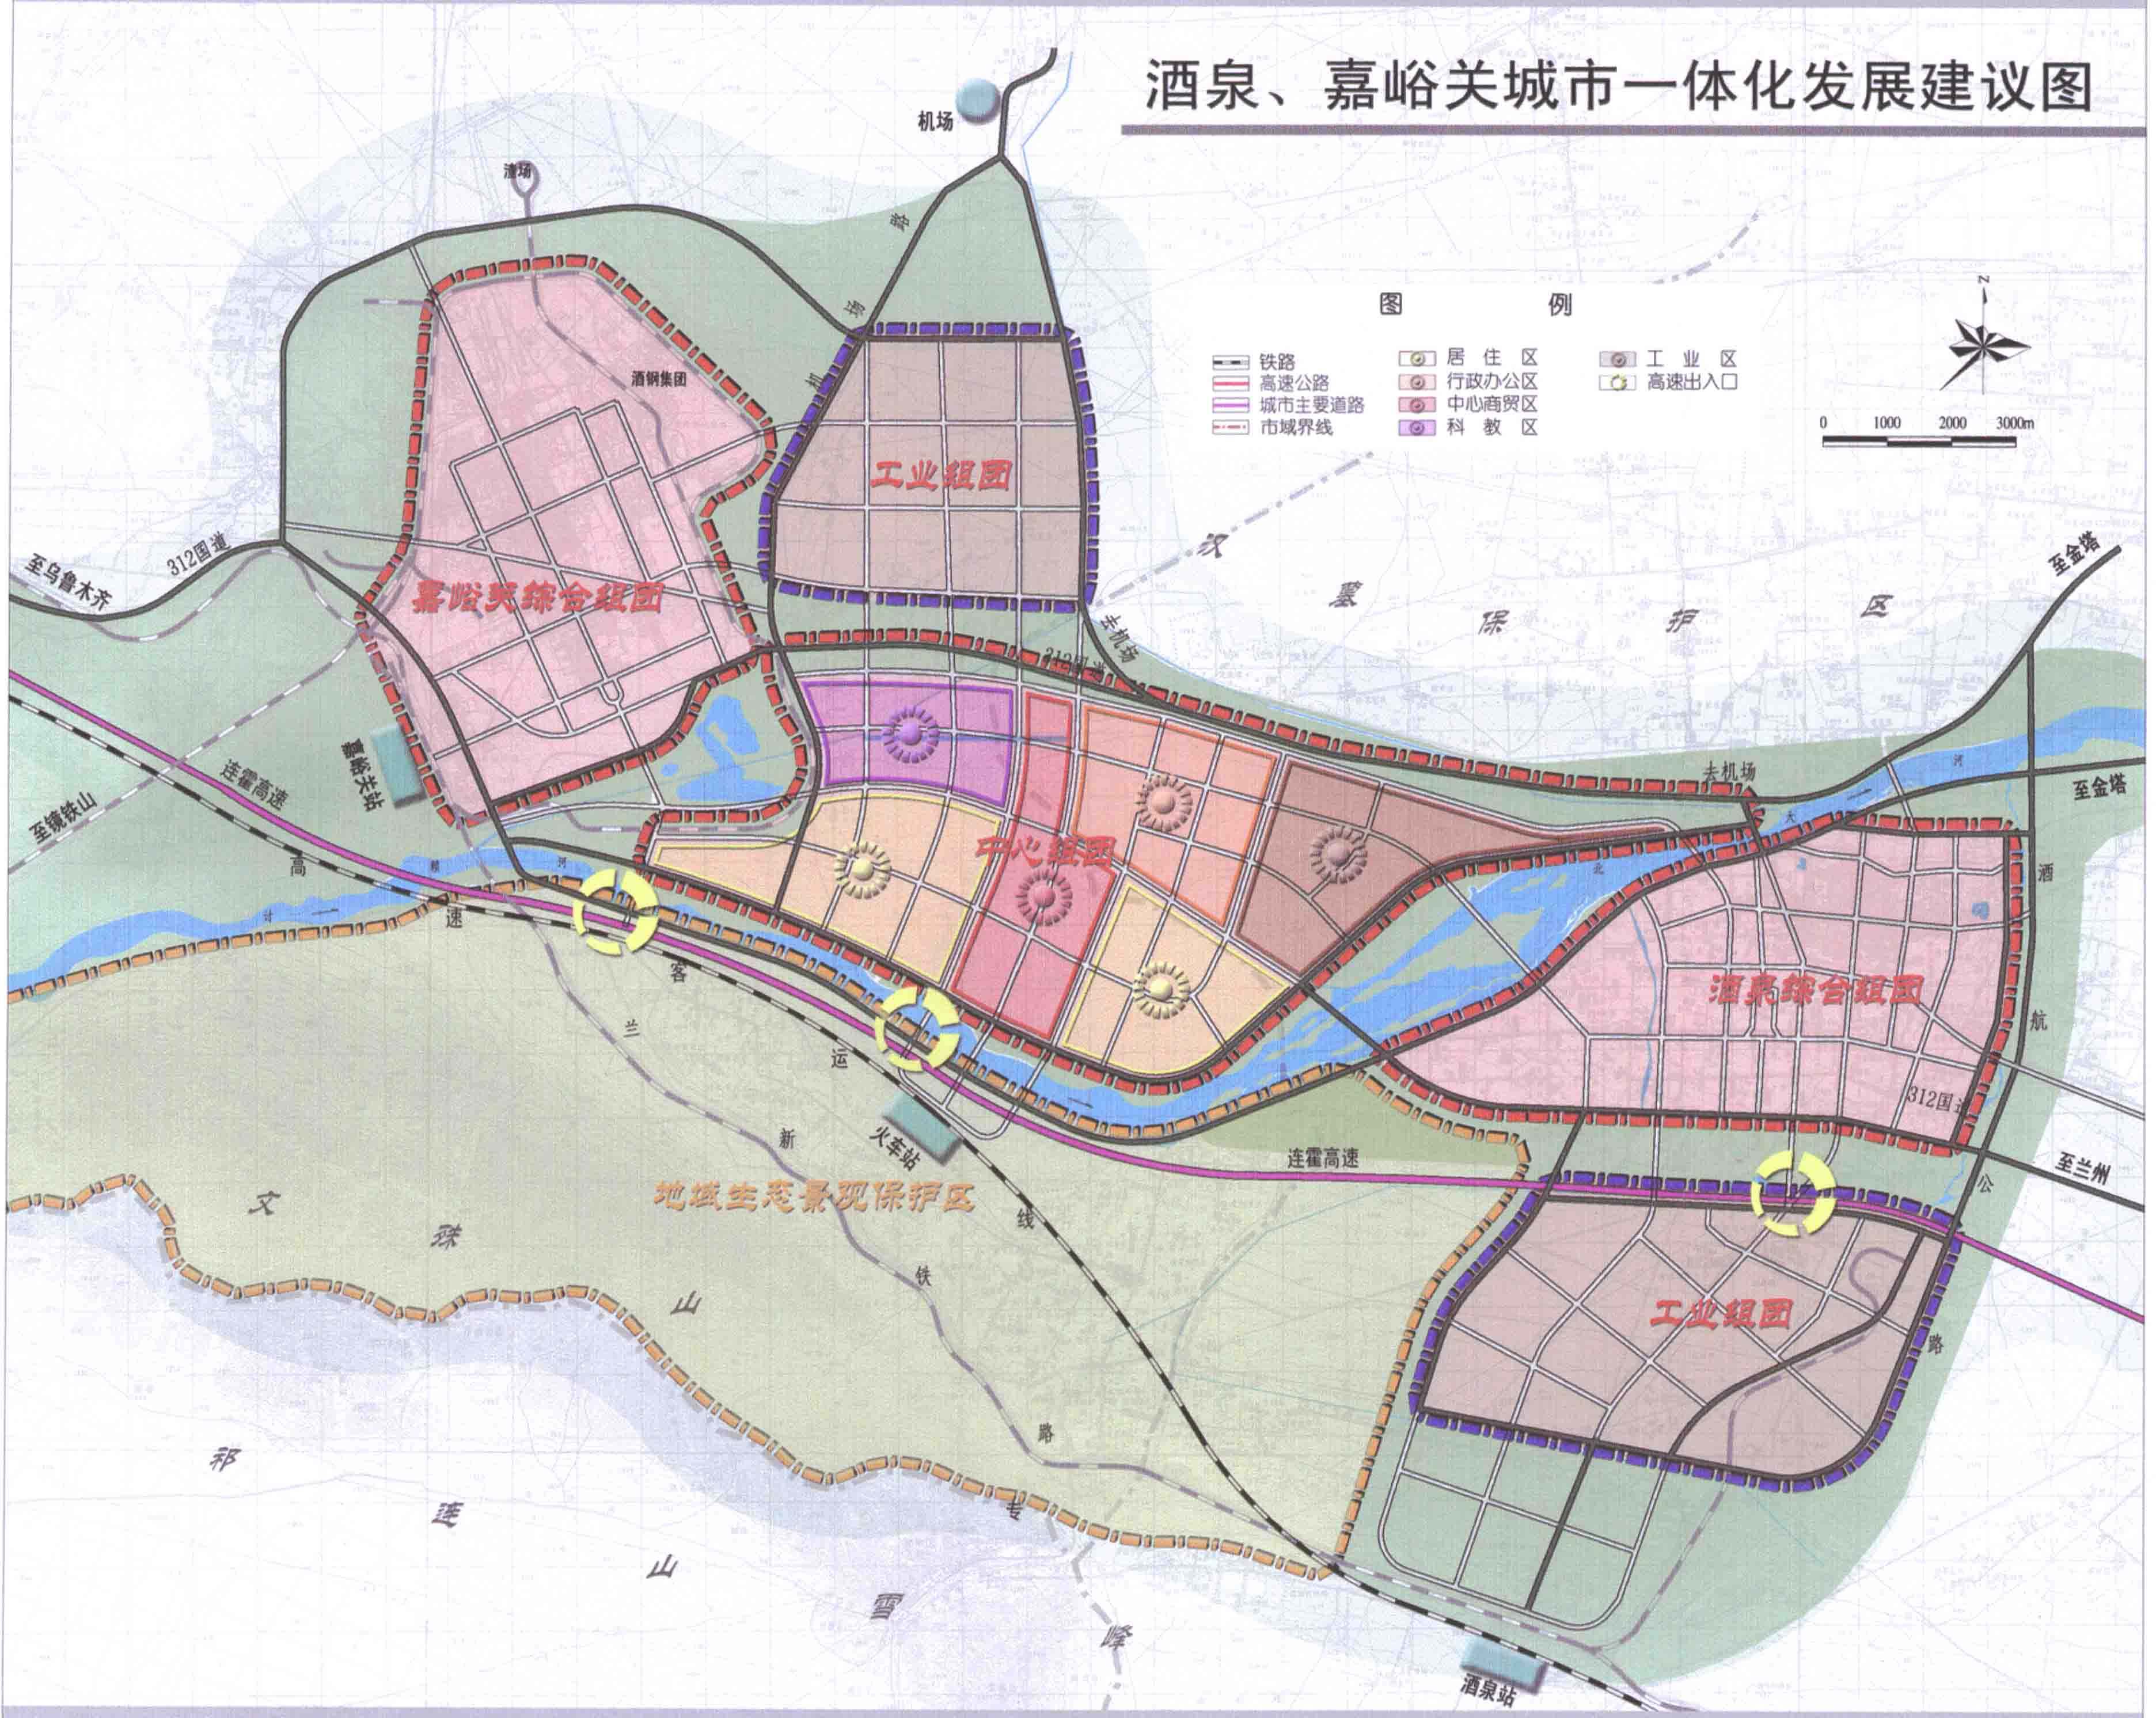 【建设】甘肃省政府批准酒、嘉两市城市总体规划